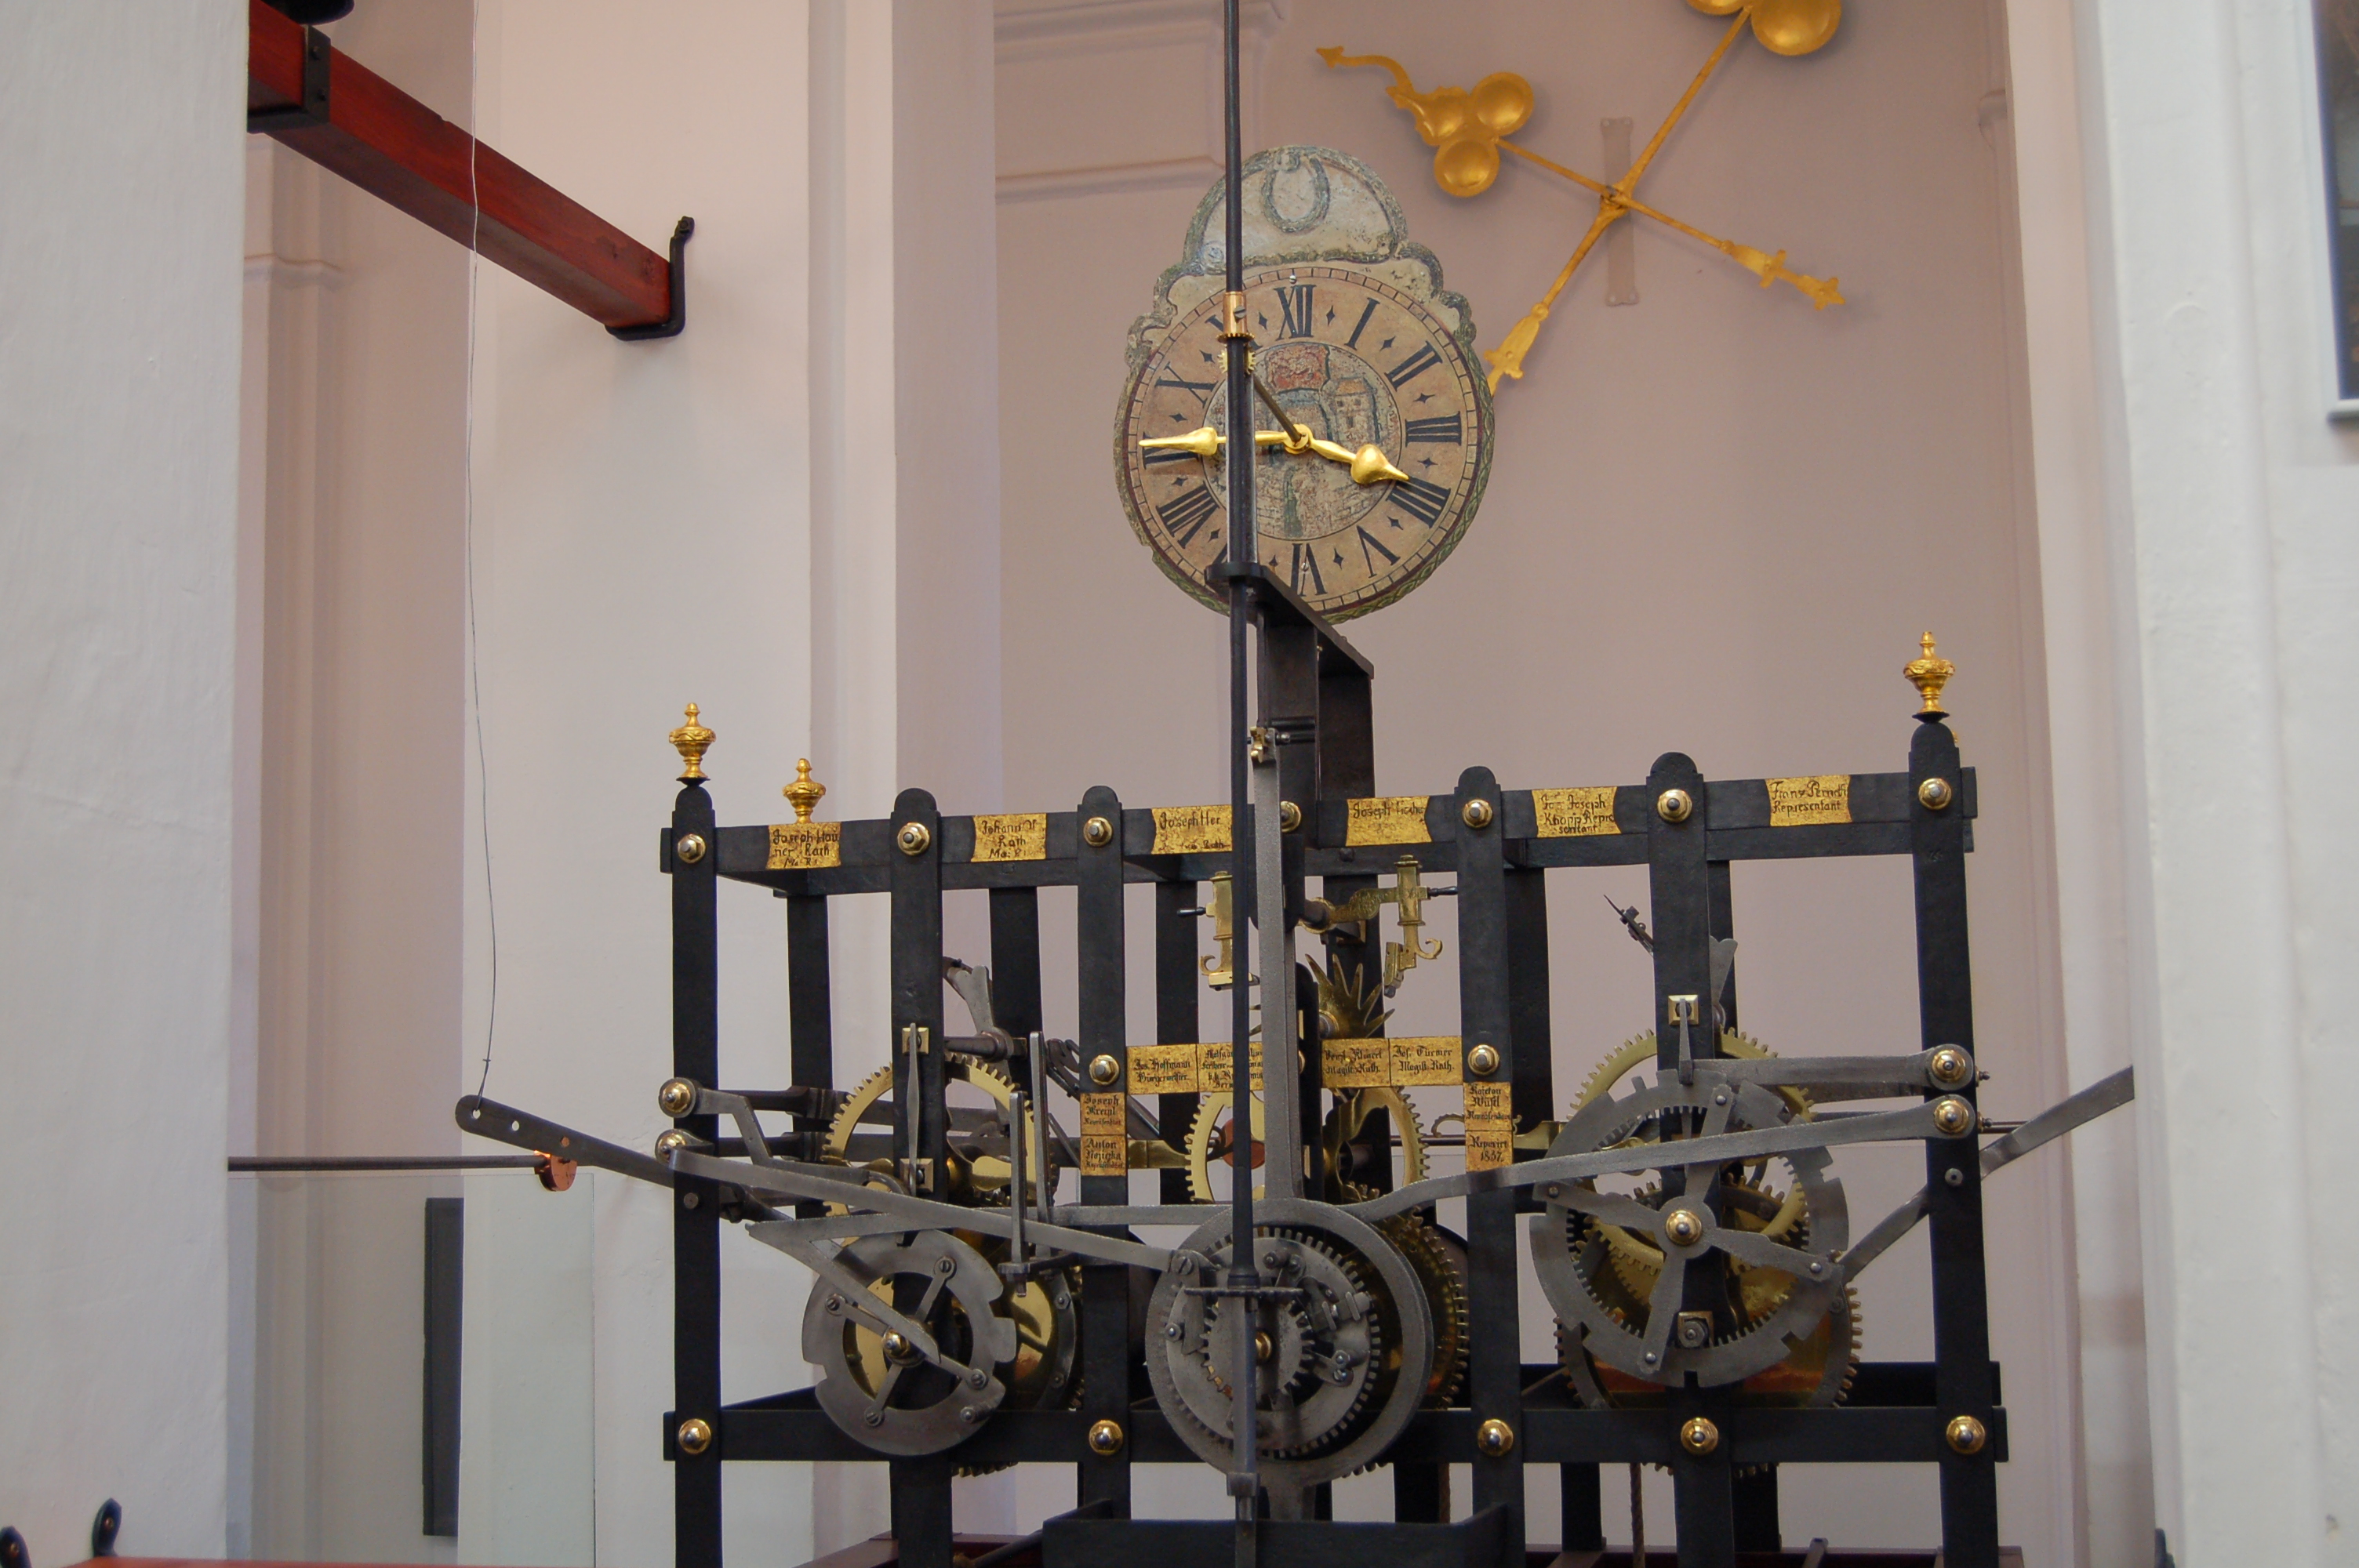 V r. 1837 se starosta Hoffmann společně s ostatními radními zasadil o opravu radničního hodinového stroje. Ten je dnes vystaven v Regionálním muzeu v Žatci.